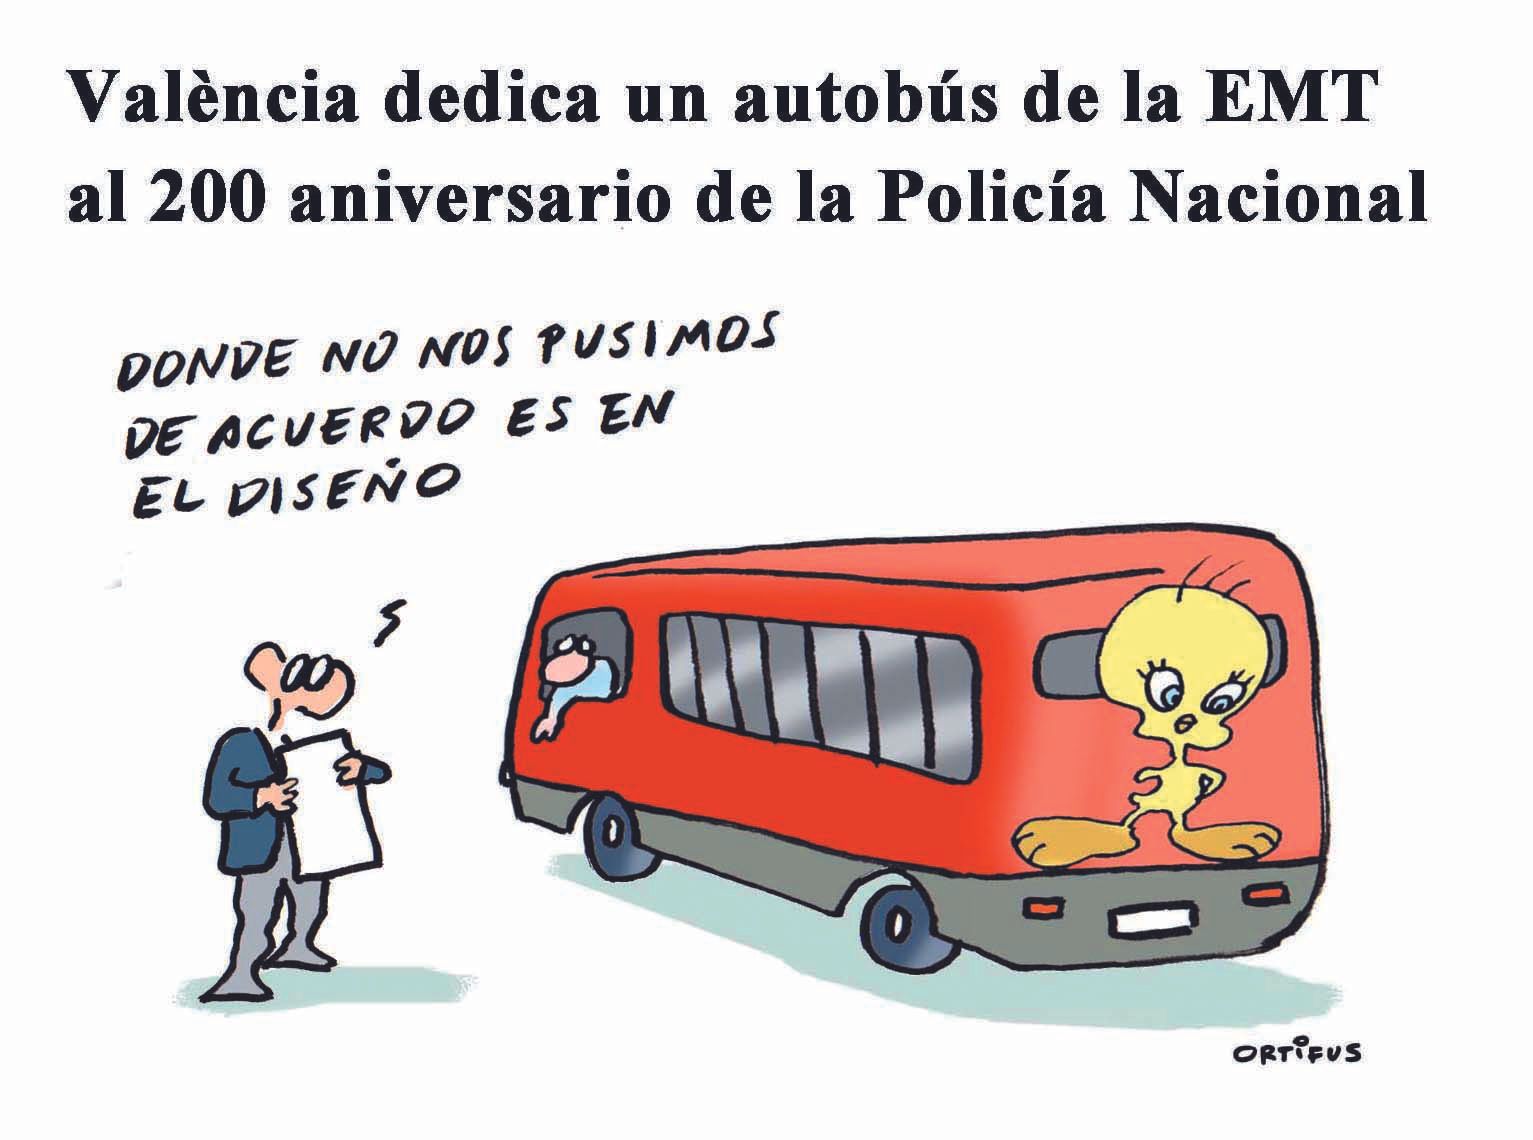 València dedica un autobús de la EMT al 200 aniversario de la Policía Nacional